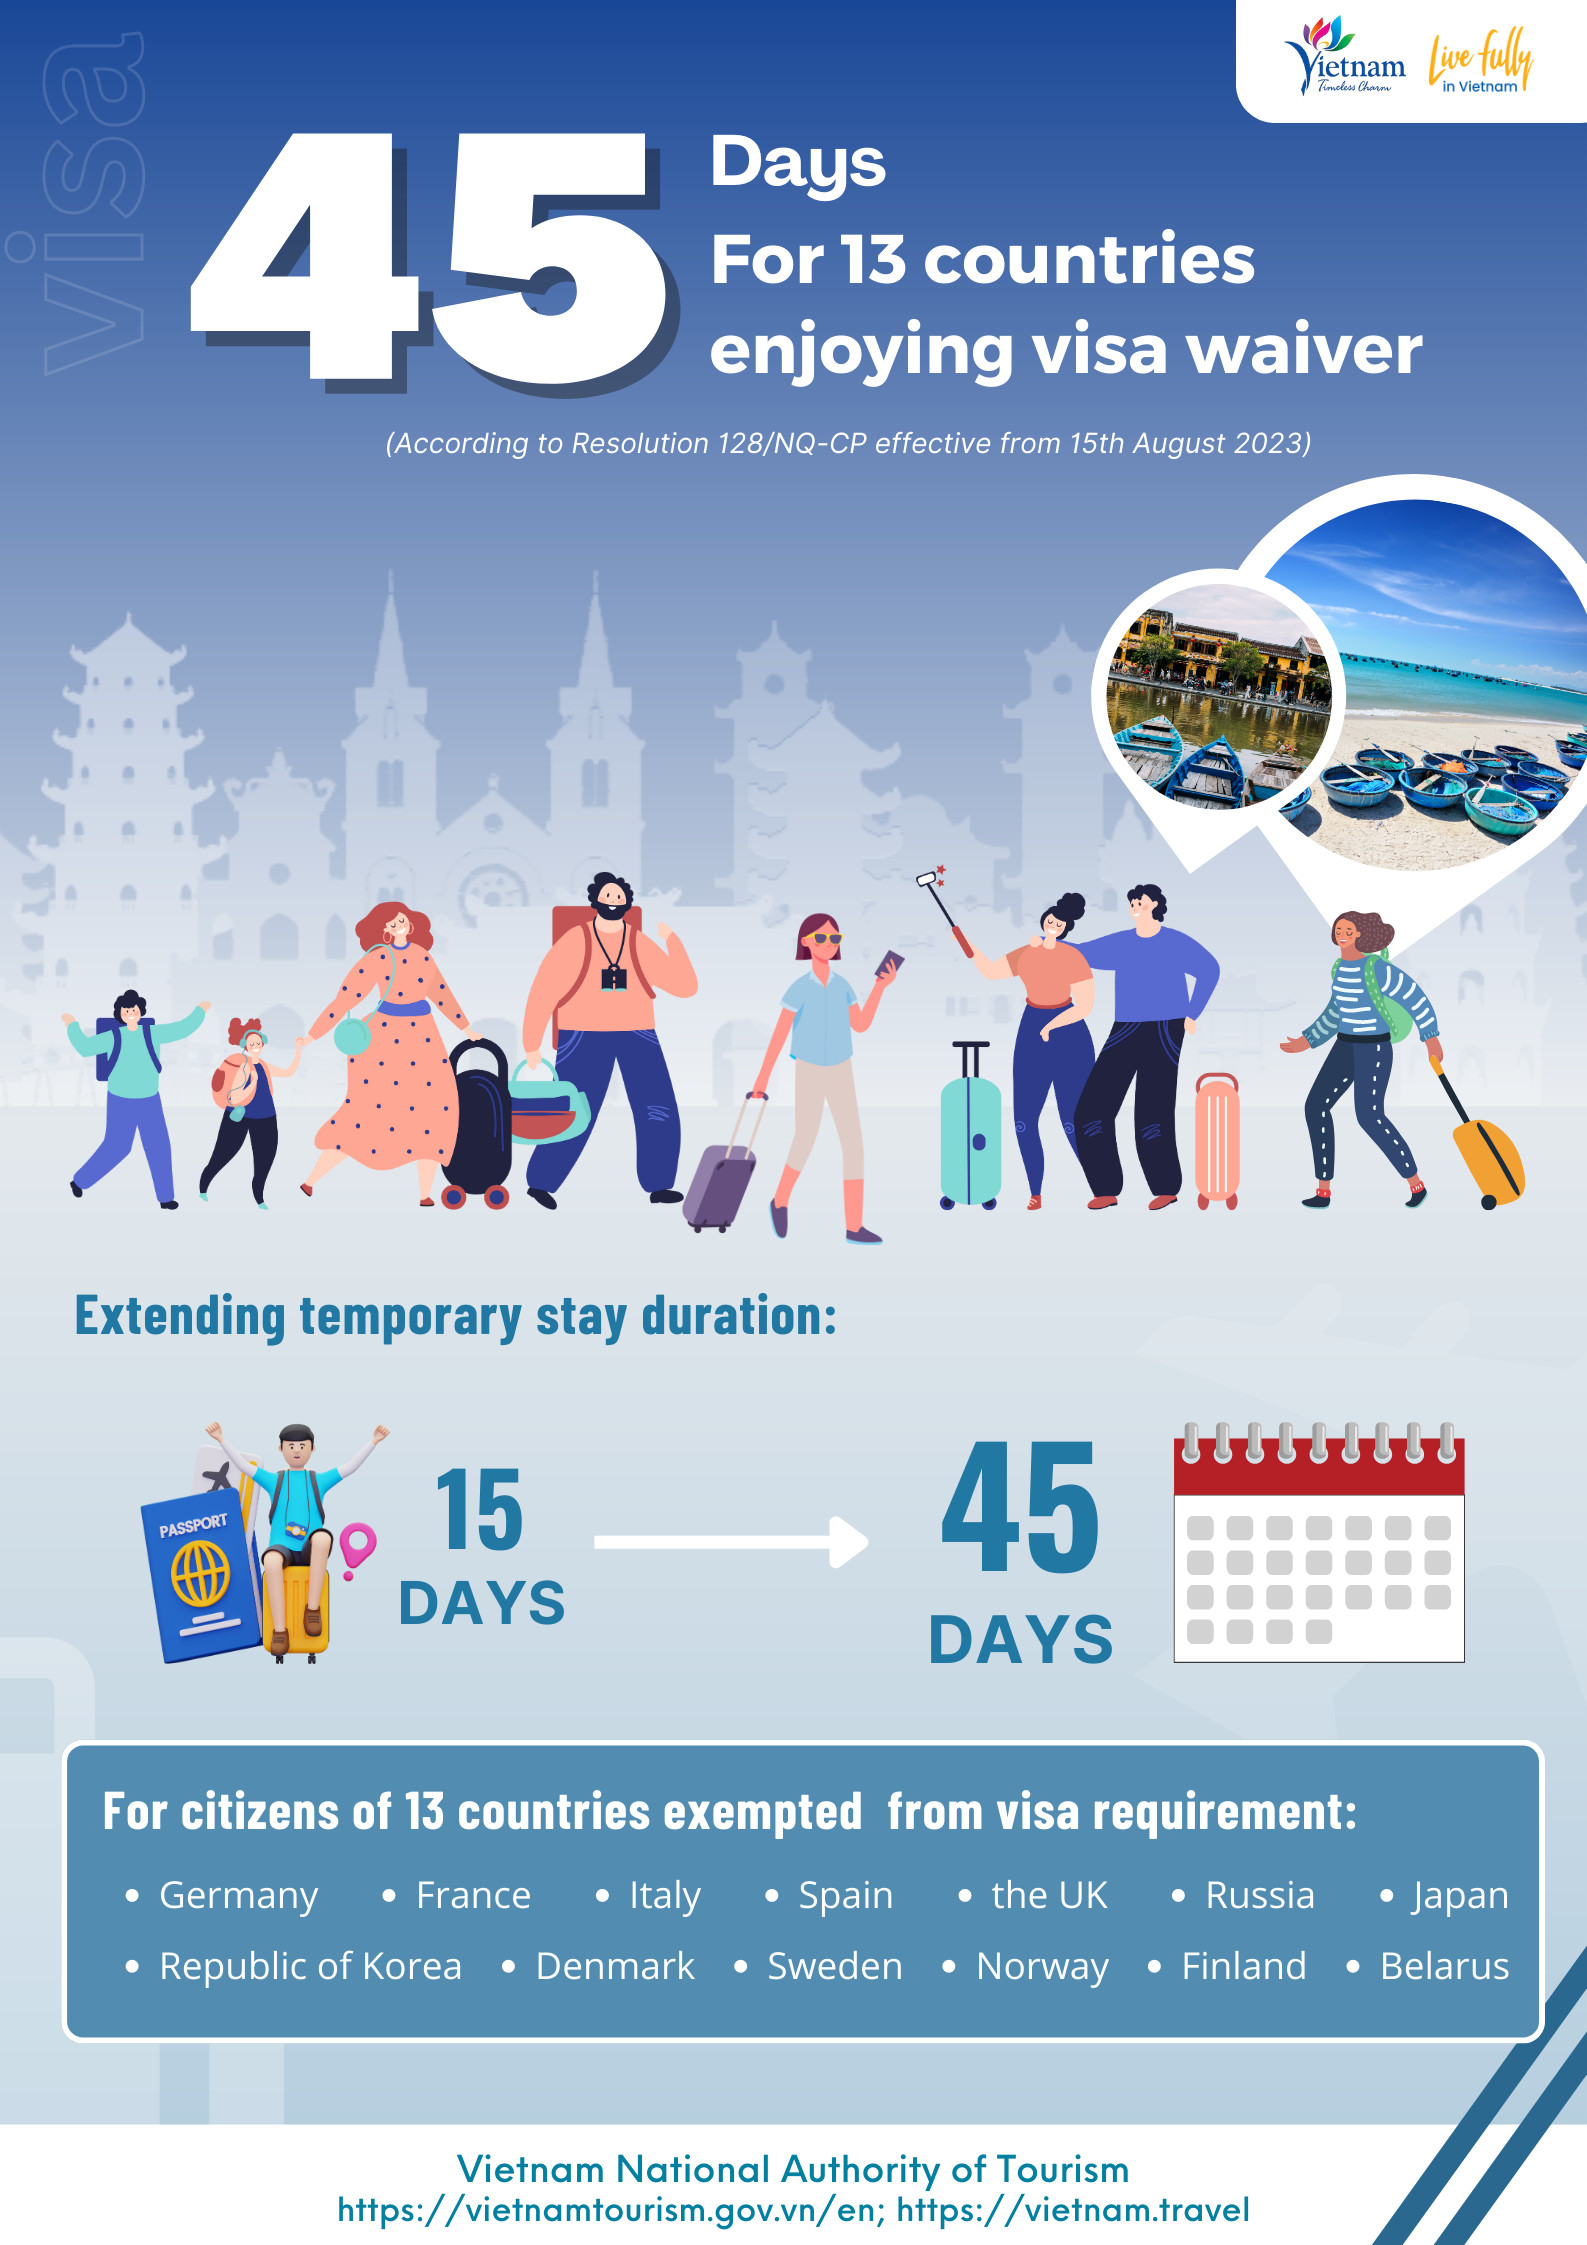 La nueva política de visas electrónicas de Vietnam - Travel Sense Asia - Agencia Vietnam - Foro Ofertas Comerciales de Viajes